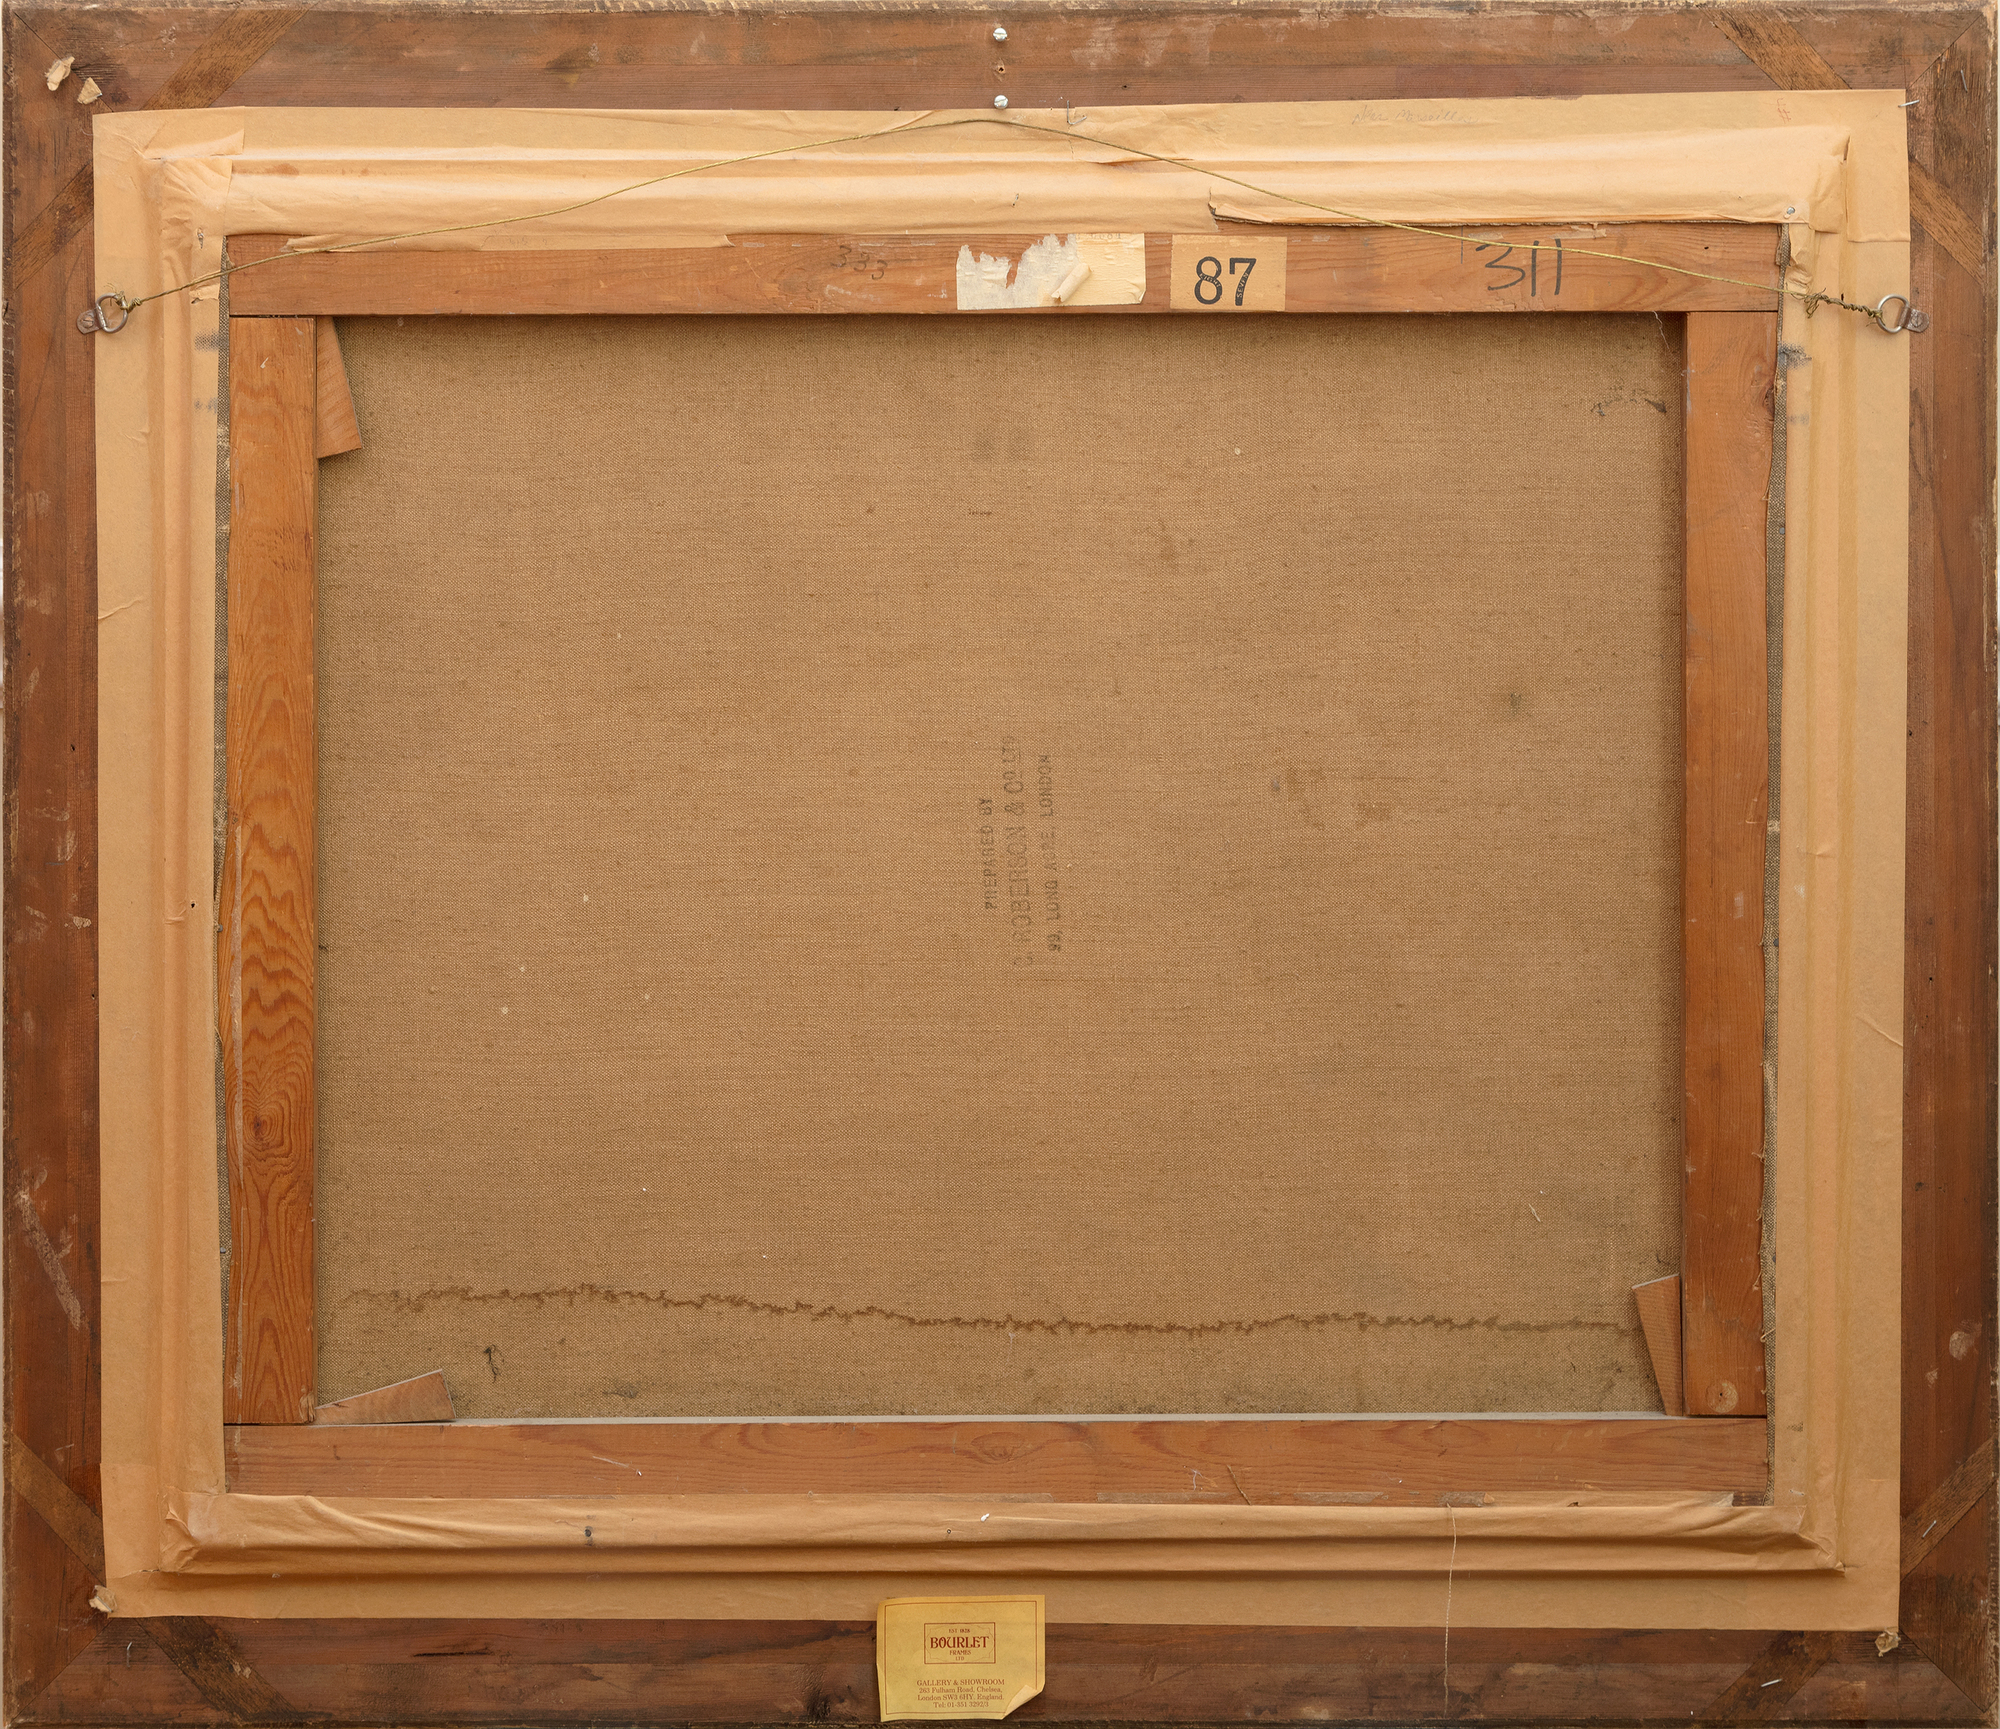 السير ونستون تشرشل - منظر فوق منفذ كاسيس (C 333) - زيت على قماش - 25 × 30 بوصة.